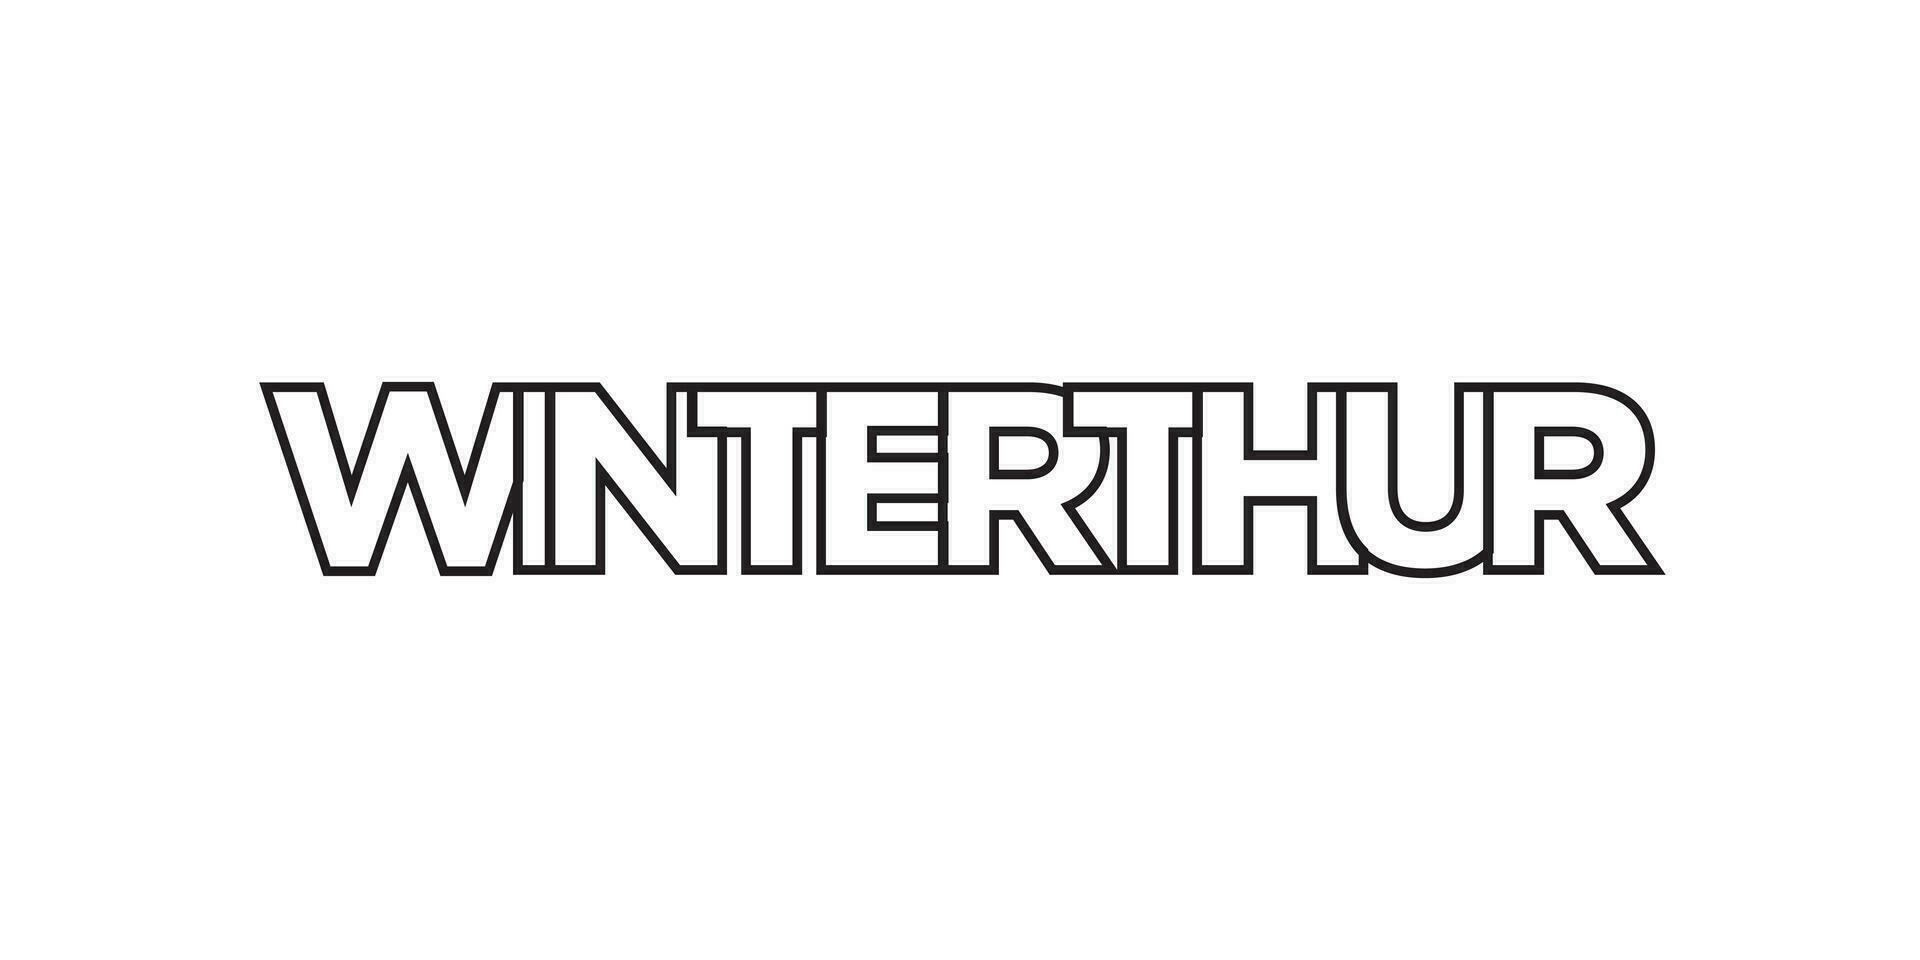 Winterthur im das Schweiz Emblem. das Design Eigenschaften ein geometrisch Stil, Vektor Illustration mit Fett gedruckt Typografie im ein modern Schriftart. das Grafik Slogan Beschriftung.